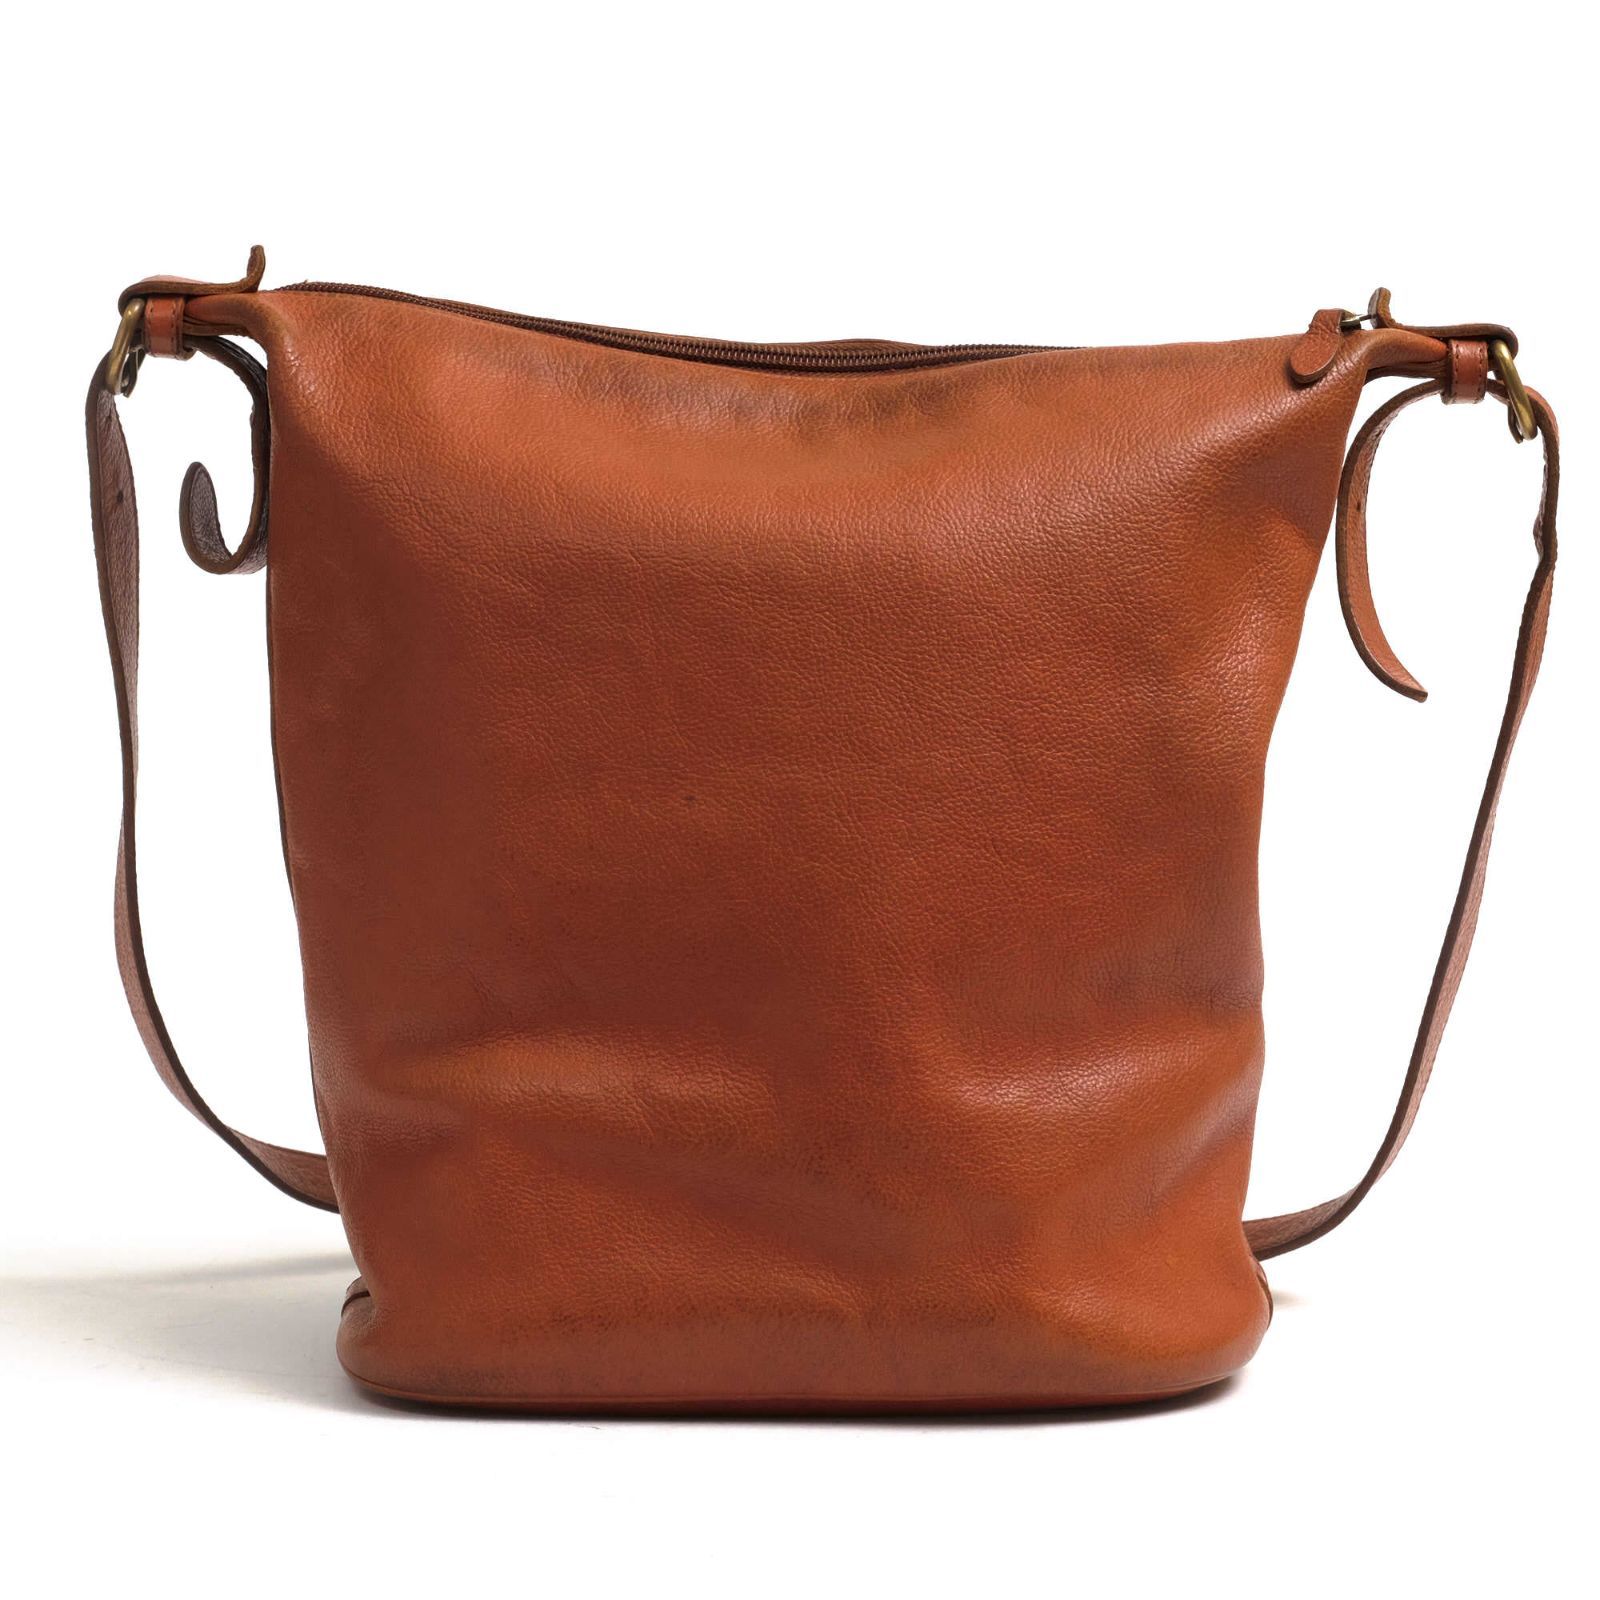 イルビゾンテ／IL BISONTE バッグ ショルダーバッグ 鞄 レディース 女性 女性用レザー 革 本革 ブラウン 茶 410067 バケツ型